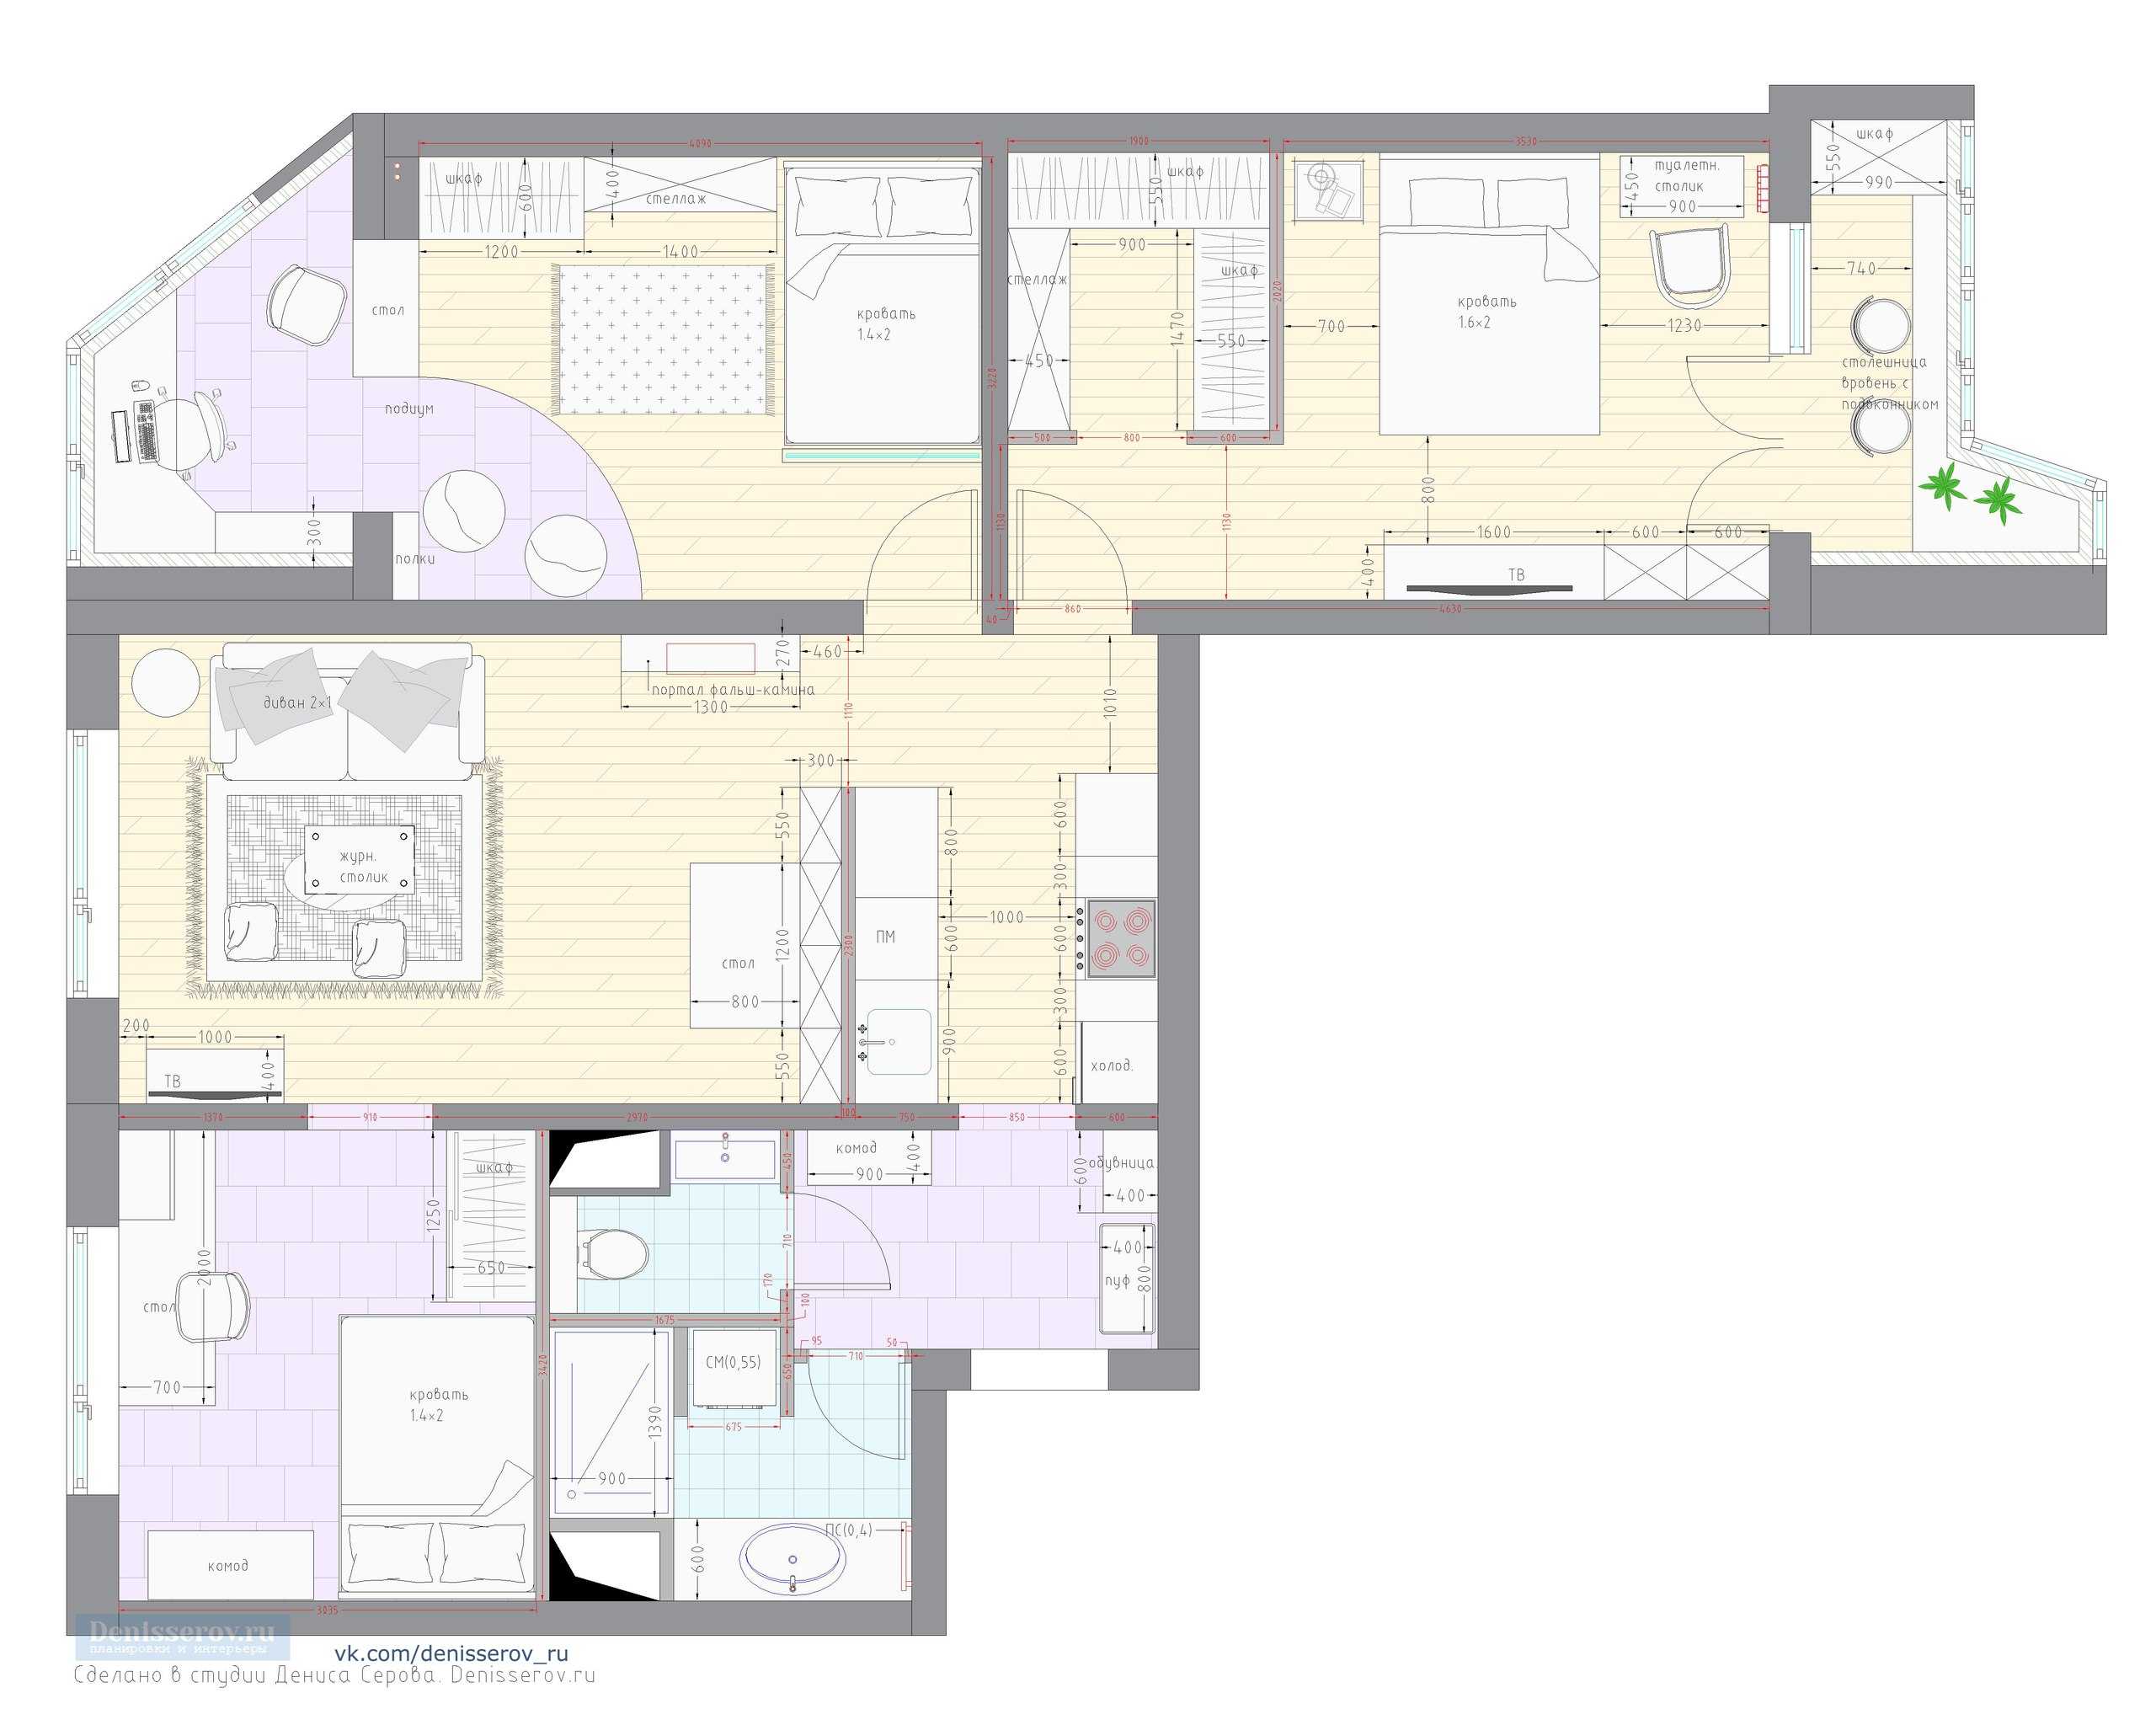 (+47 фото) схемы и фото планировки квартир ii 57 серии с размерами удачные решения